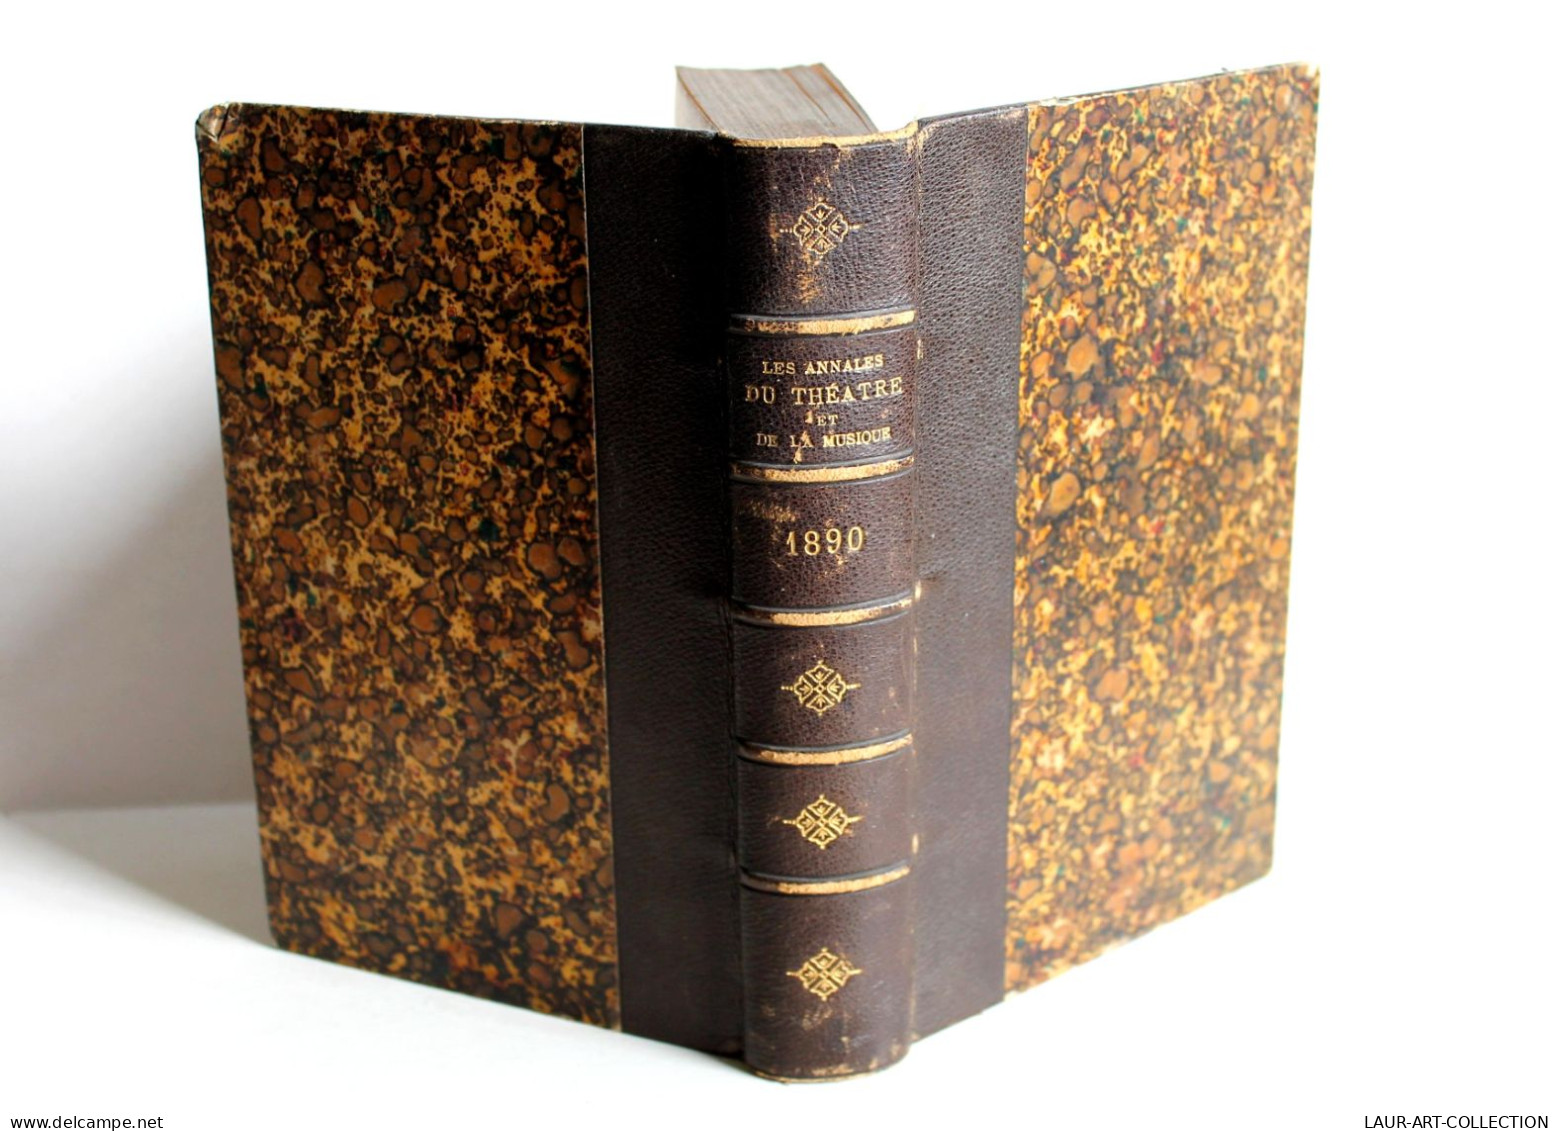 ANNALES DU THEATRE ET DE LA MUSIQUE De NOEL & STOULLIG + PREFACE, 16e ANNEE 1891 / ANCIEN LIVRE XIXe SIECLE (1803.52) - Französische Autoren